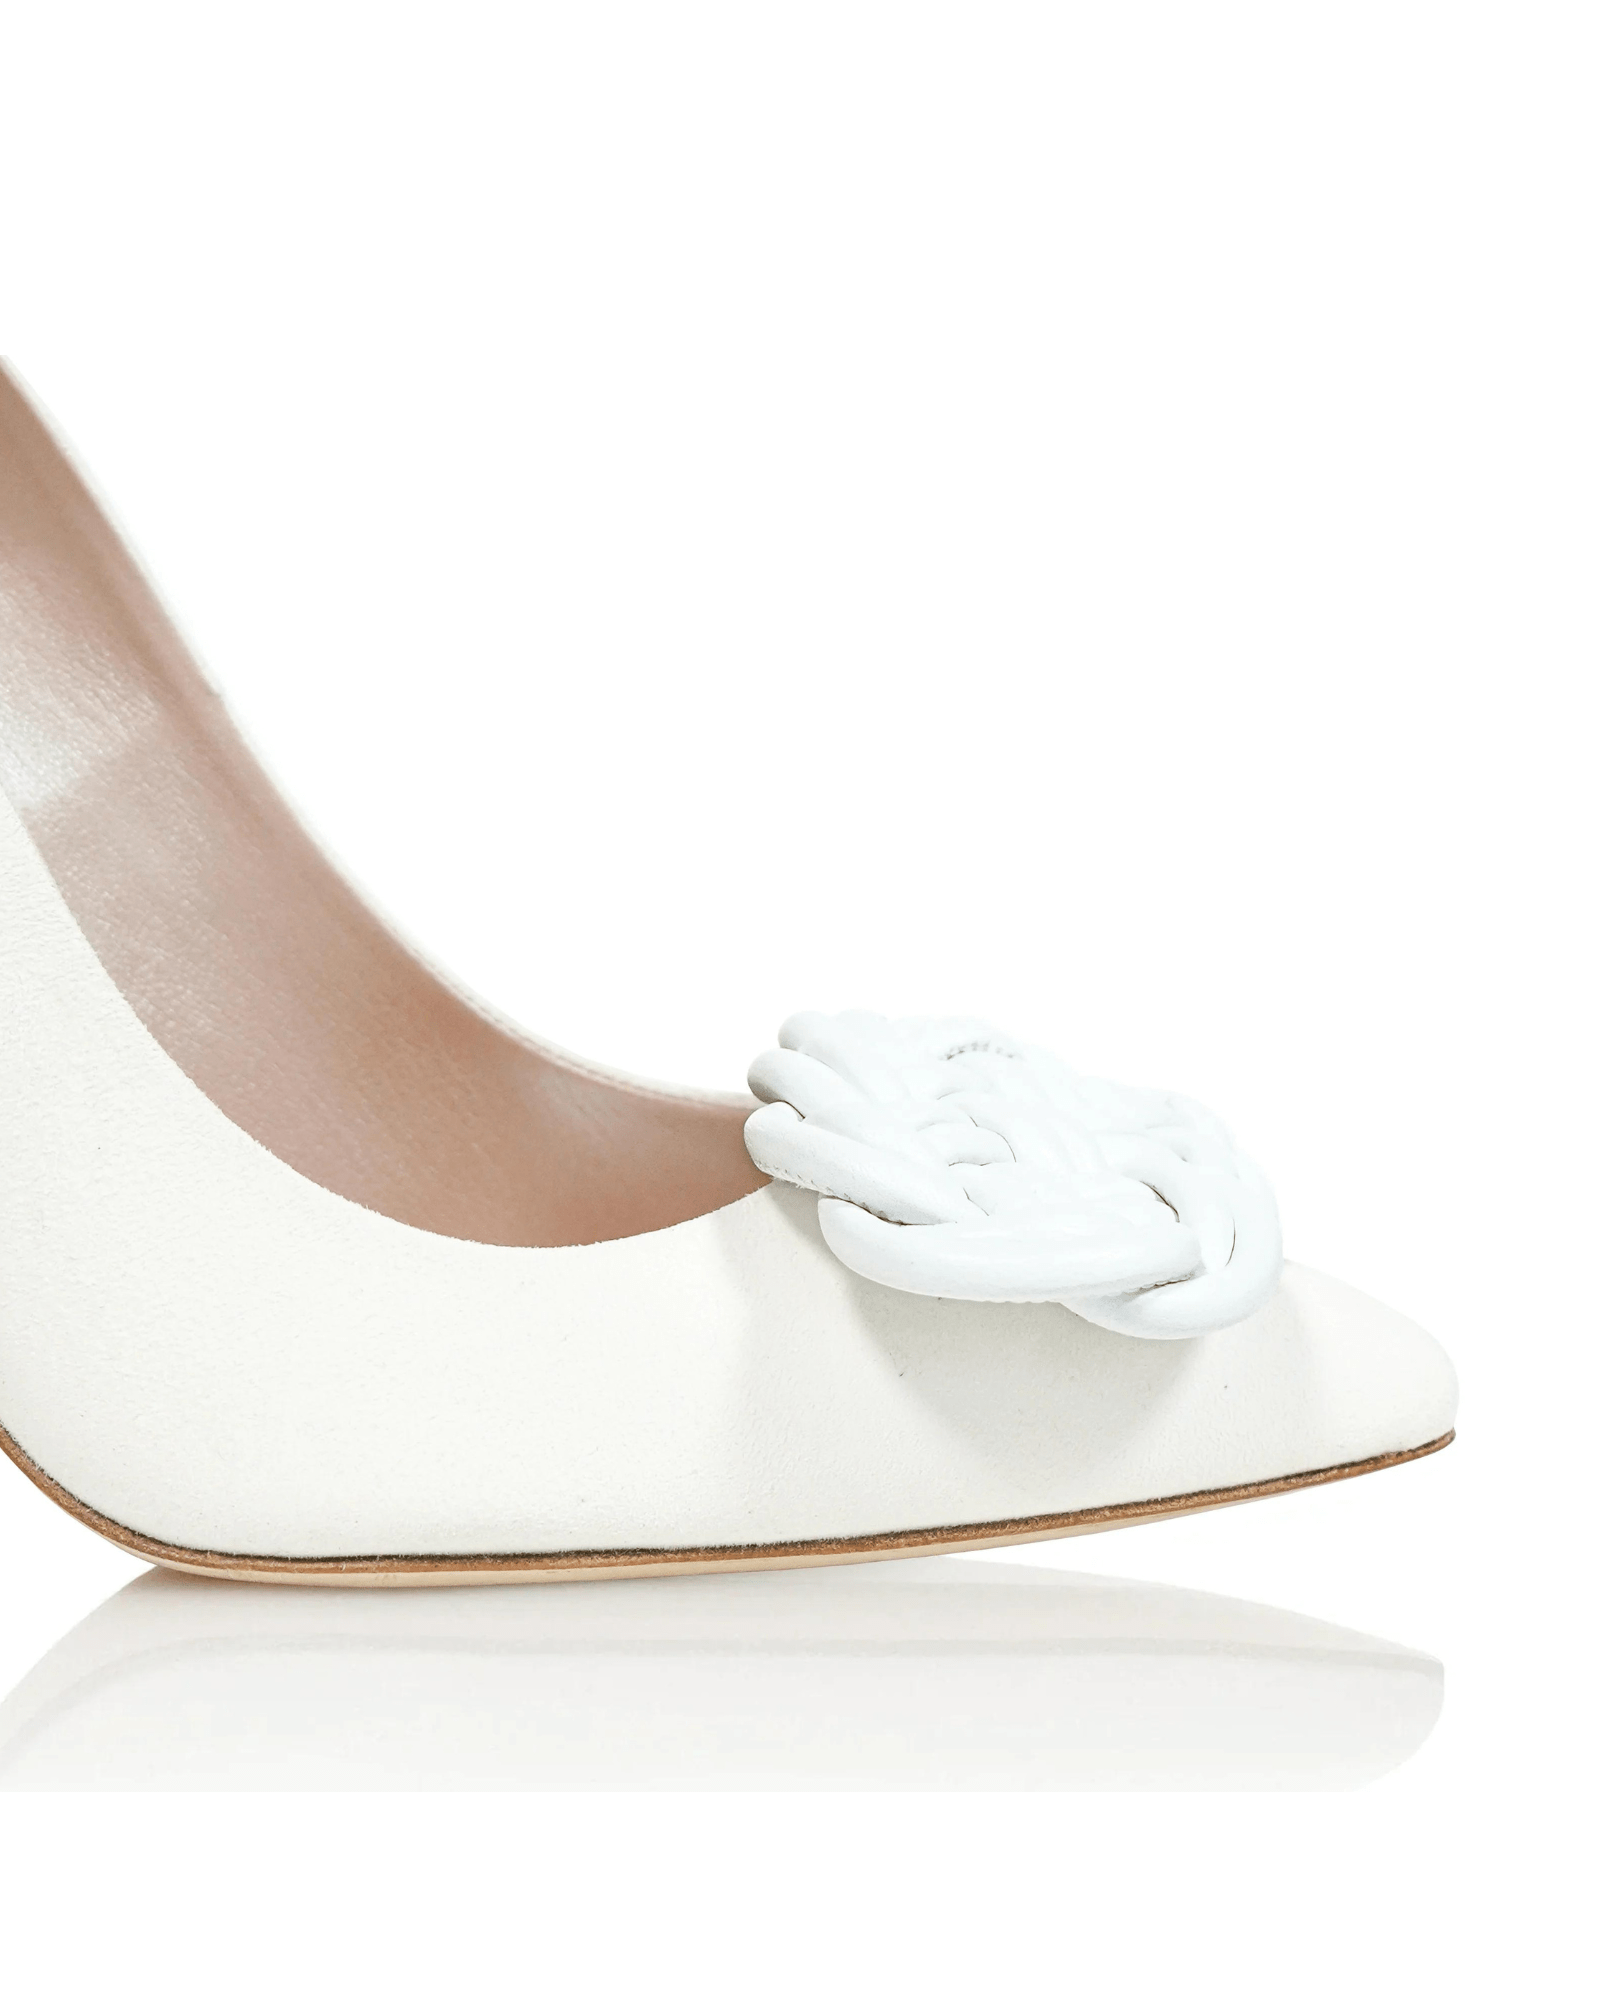 Panama Woven Shoe Clips Bridal Shoe Clip Leather Shoe Clip  image